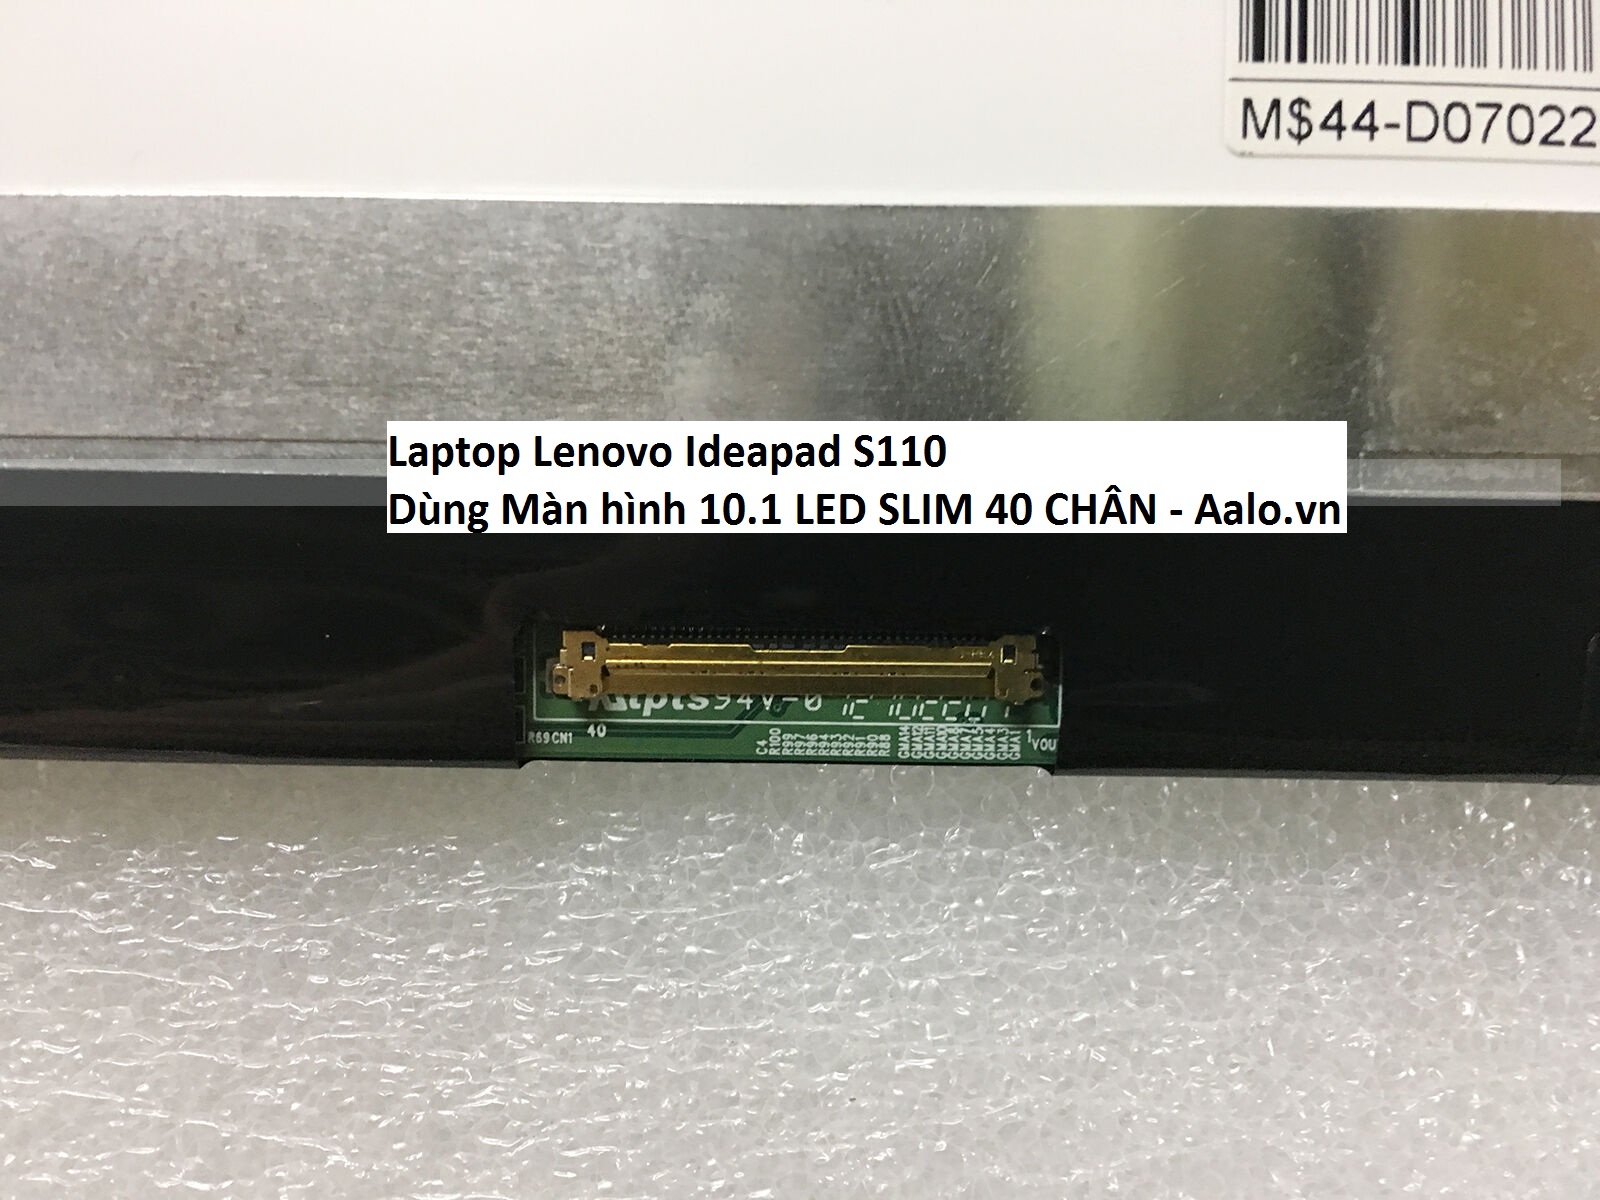 Màn hình Laptop Lenovo Ideapad S110 - Aalo.vn